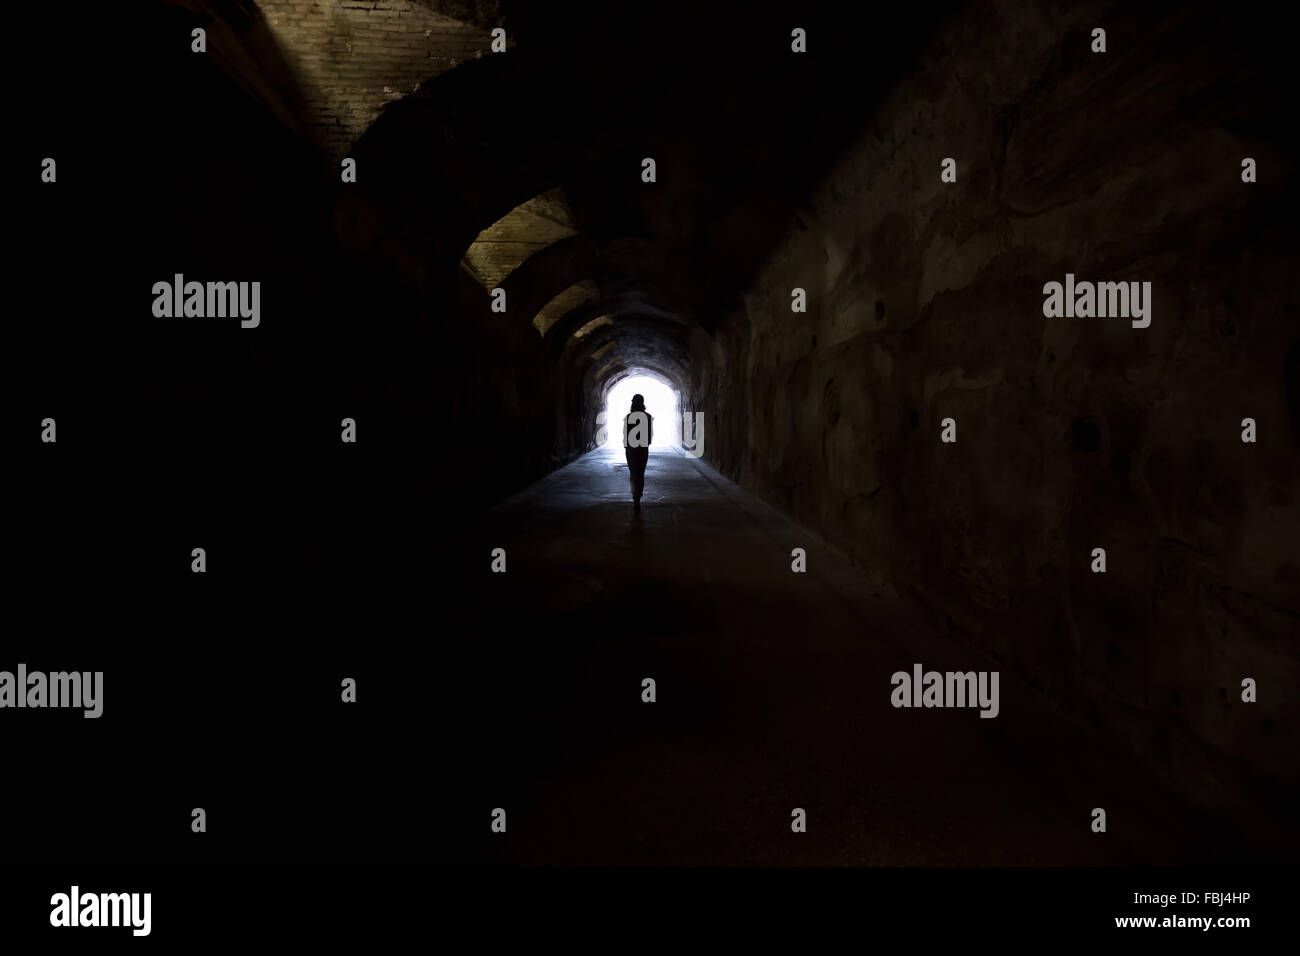 Persona nel buio del tunnel, andando verso la luce. La speranza, paura, "aldilà" concetti Foto Stock